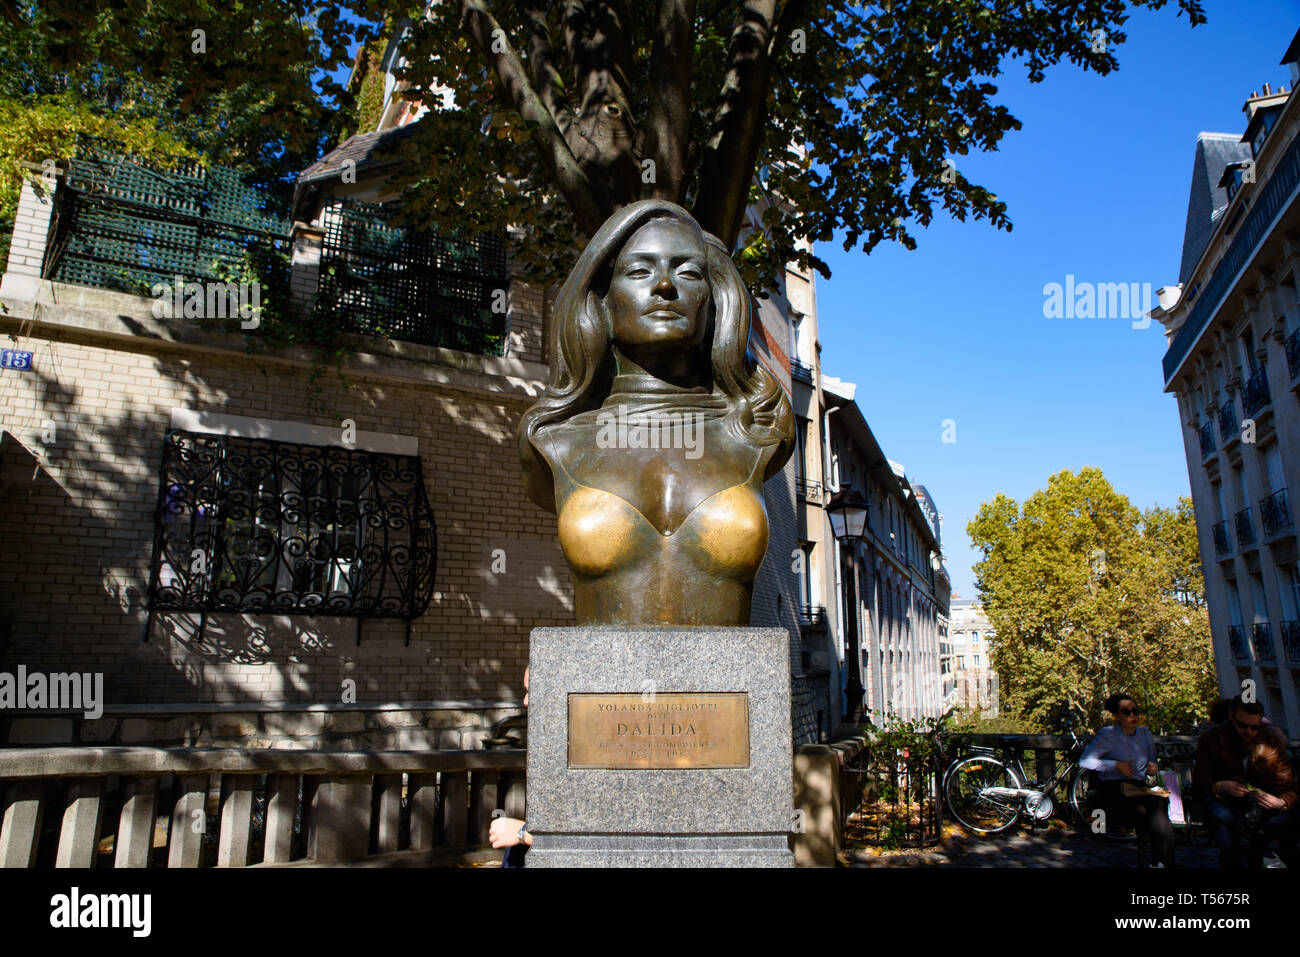 Statue de Dalida, une chanteuse française, à Montmartre, France Banque D'Images